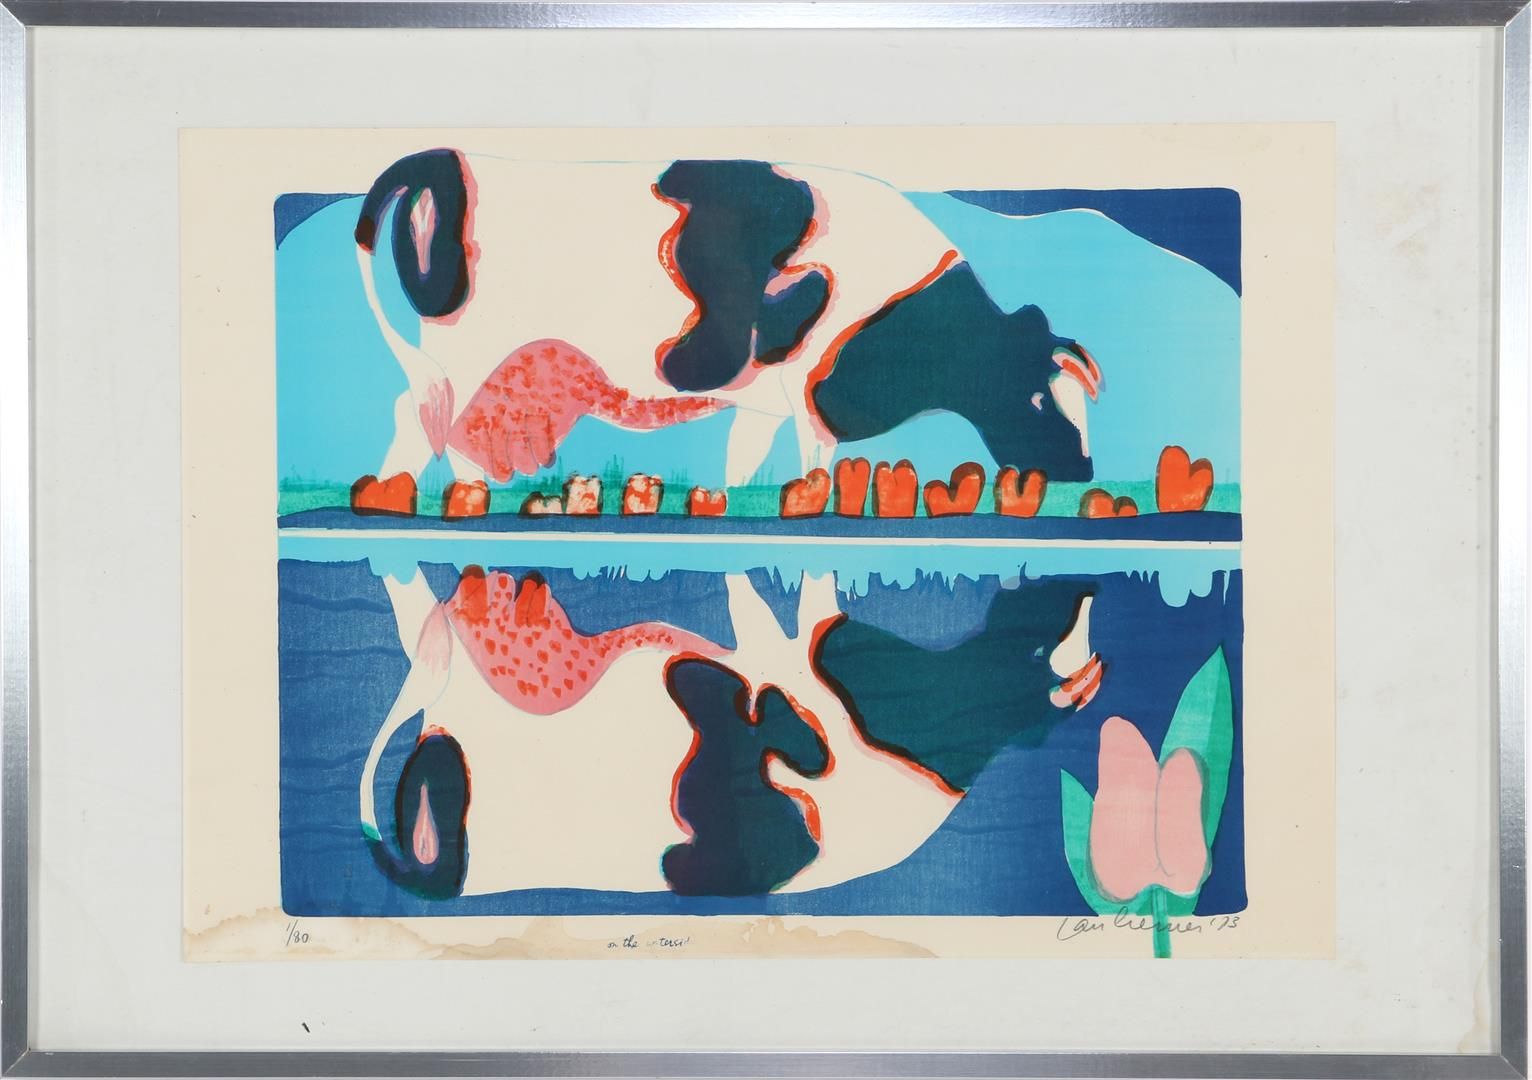 Jan Cremer Jan Cremer (1940-)

Sul sito acquatico, litografia a colori del 1973,&hellip;